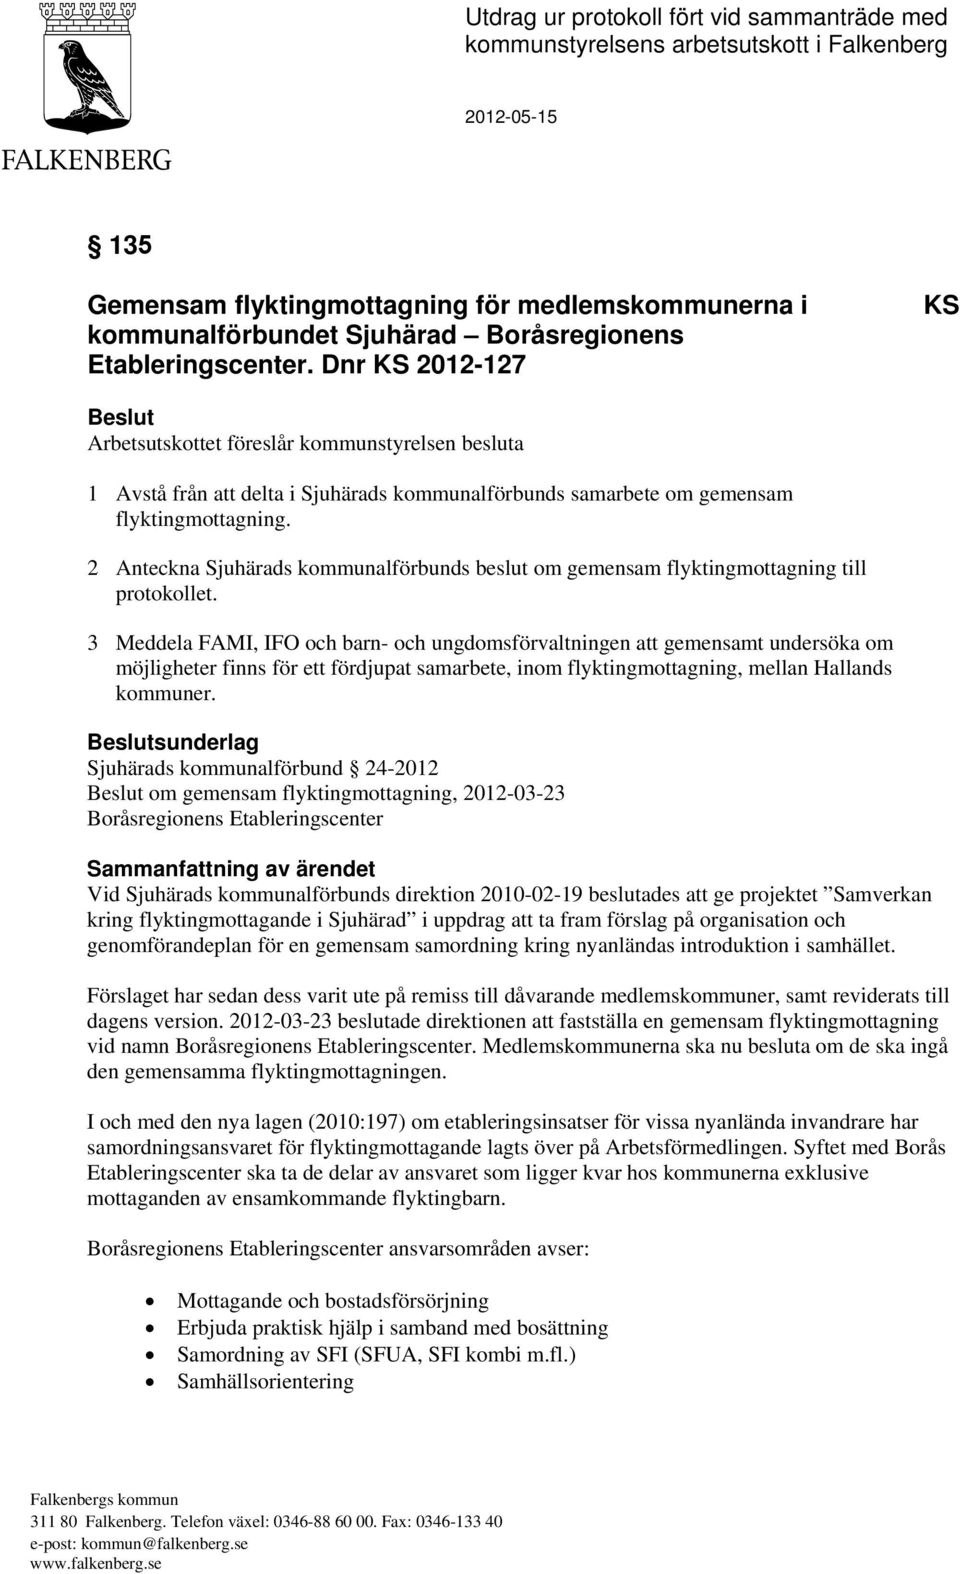 2 Anteckna Sjuhärads kommunalförbunds beslut om gemensam flyktingmottagning till protokollet.